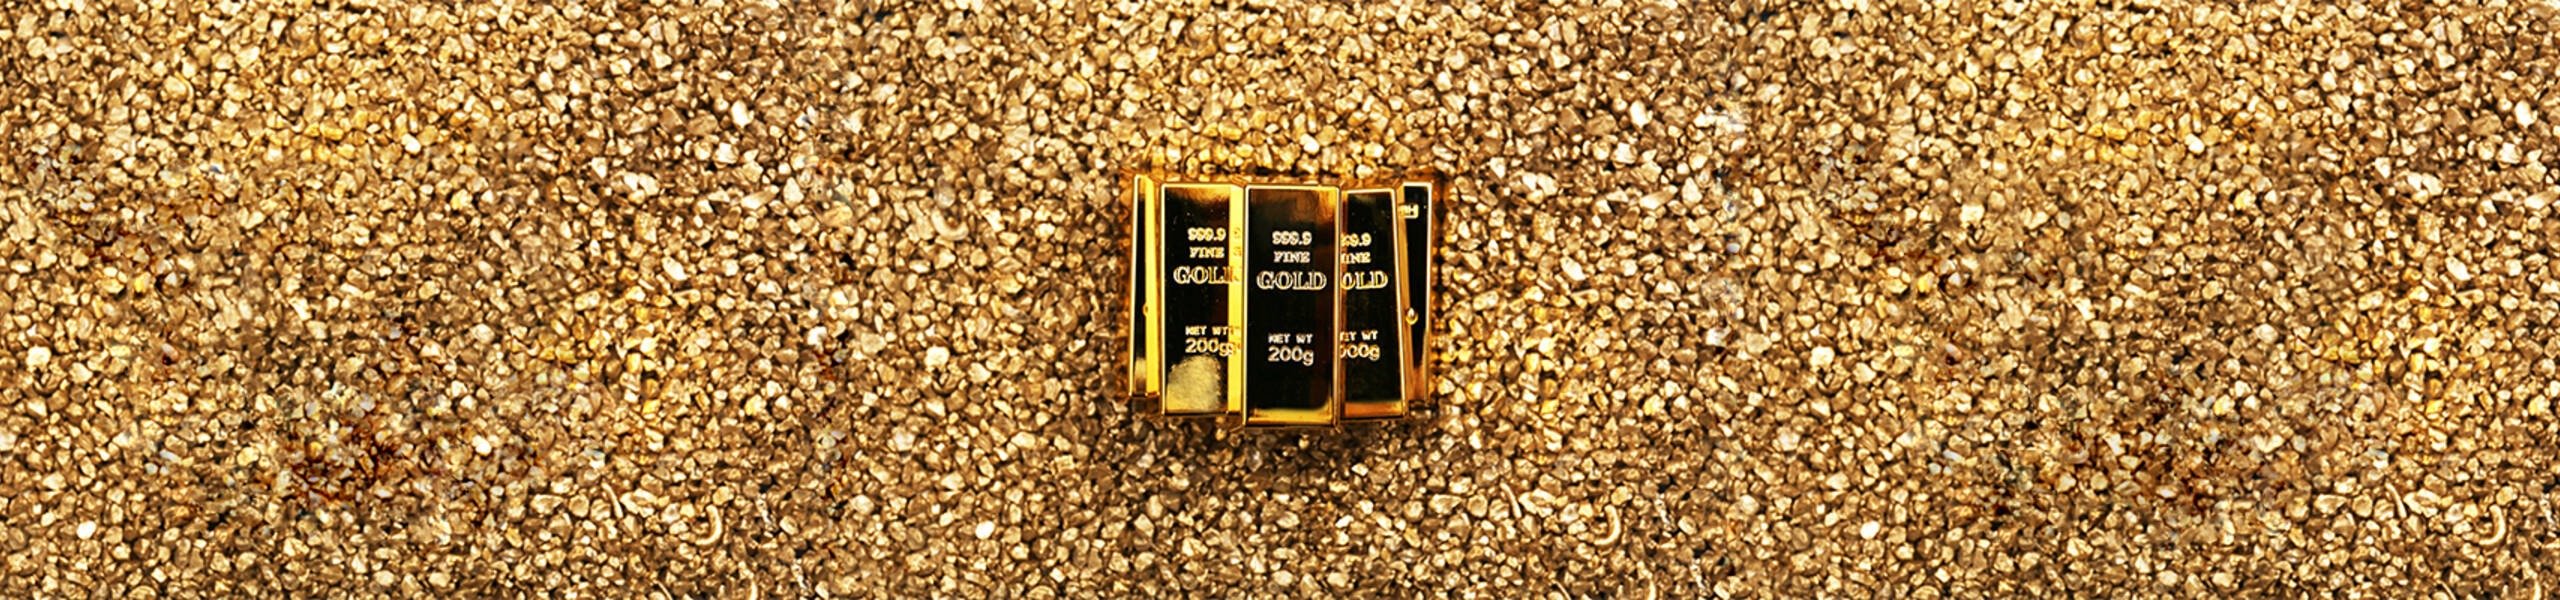 Oro: ¿bajista en el corto plazo por debajo de $1270?